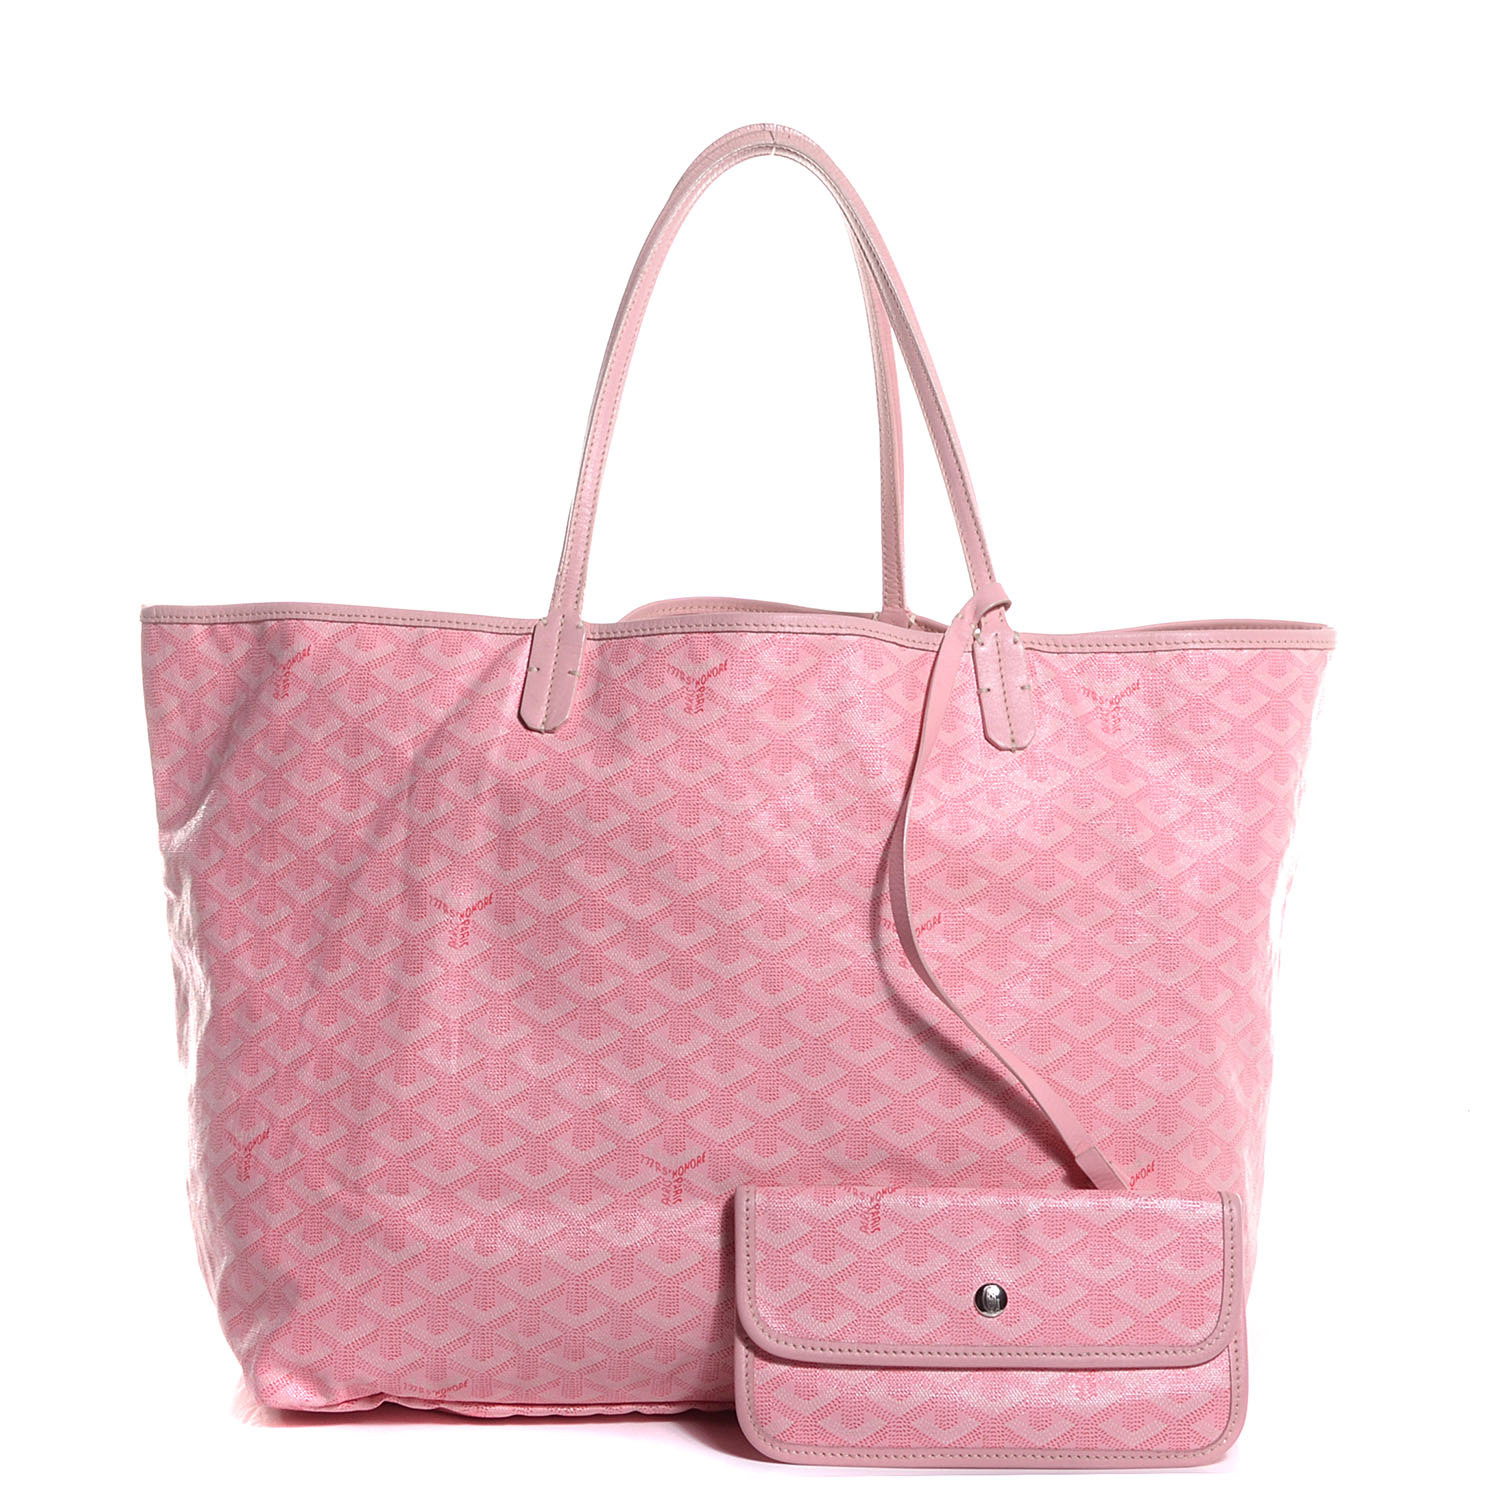 goyard pink tote bag